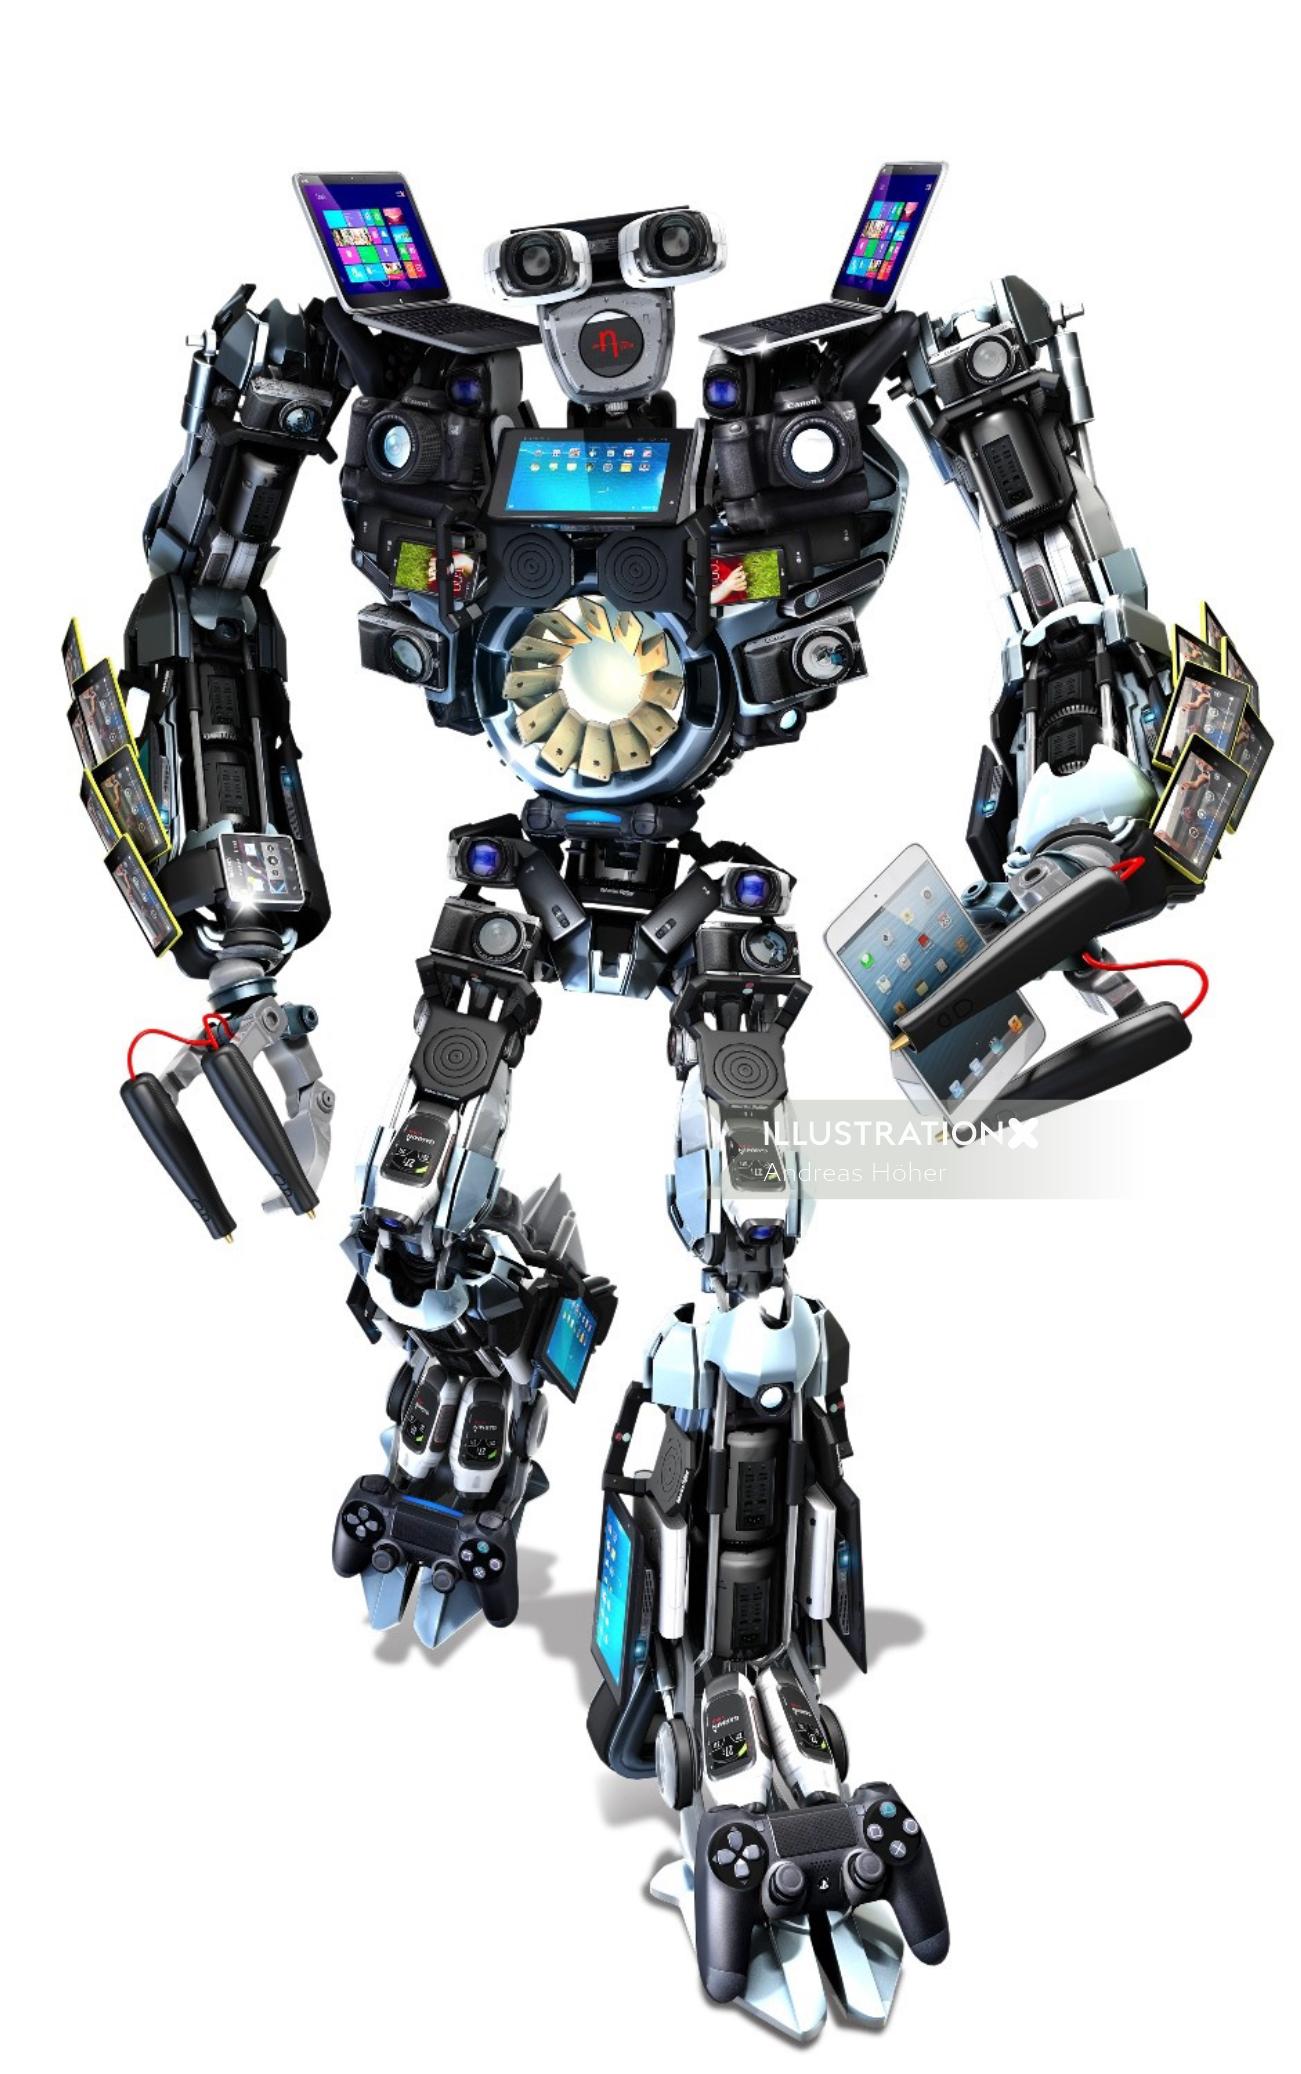 3D / CGI robot with big arms